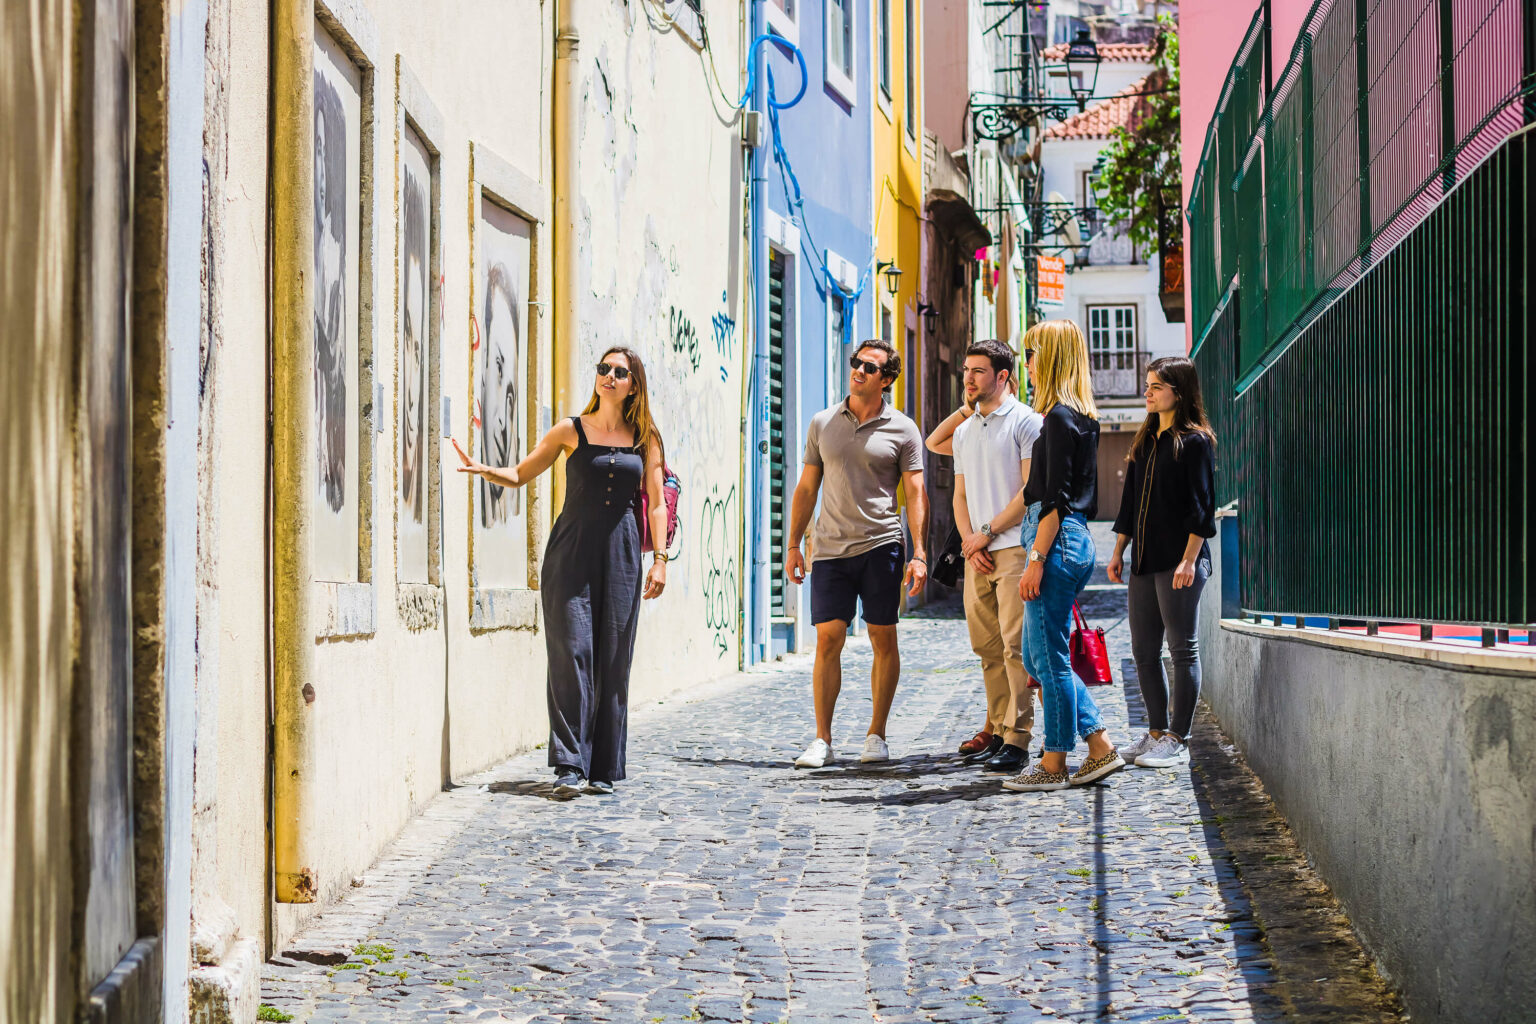 Saboreando Lisboa: Descubriendo tesoros gastronómicos ocultos y relatos históricos